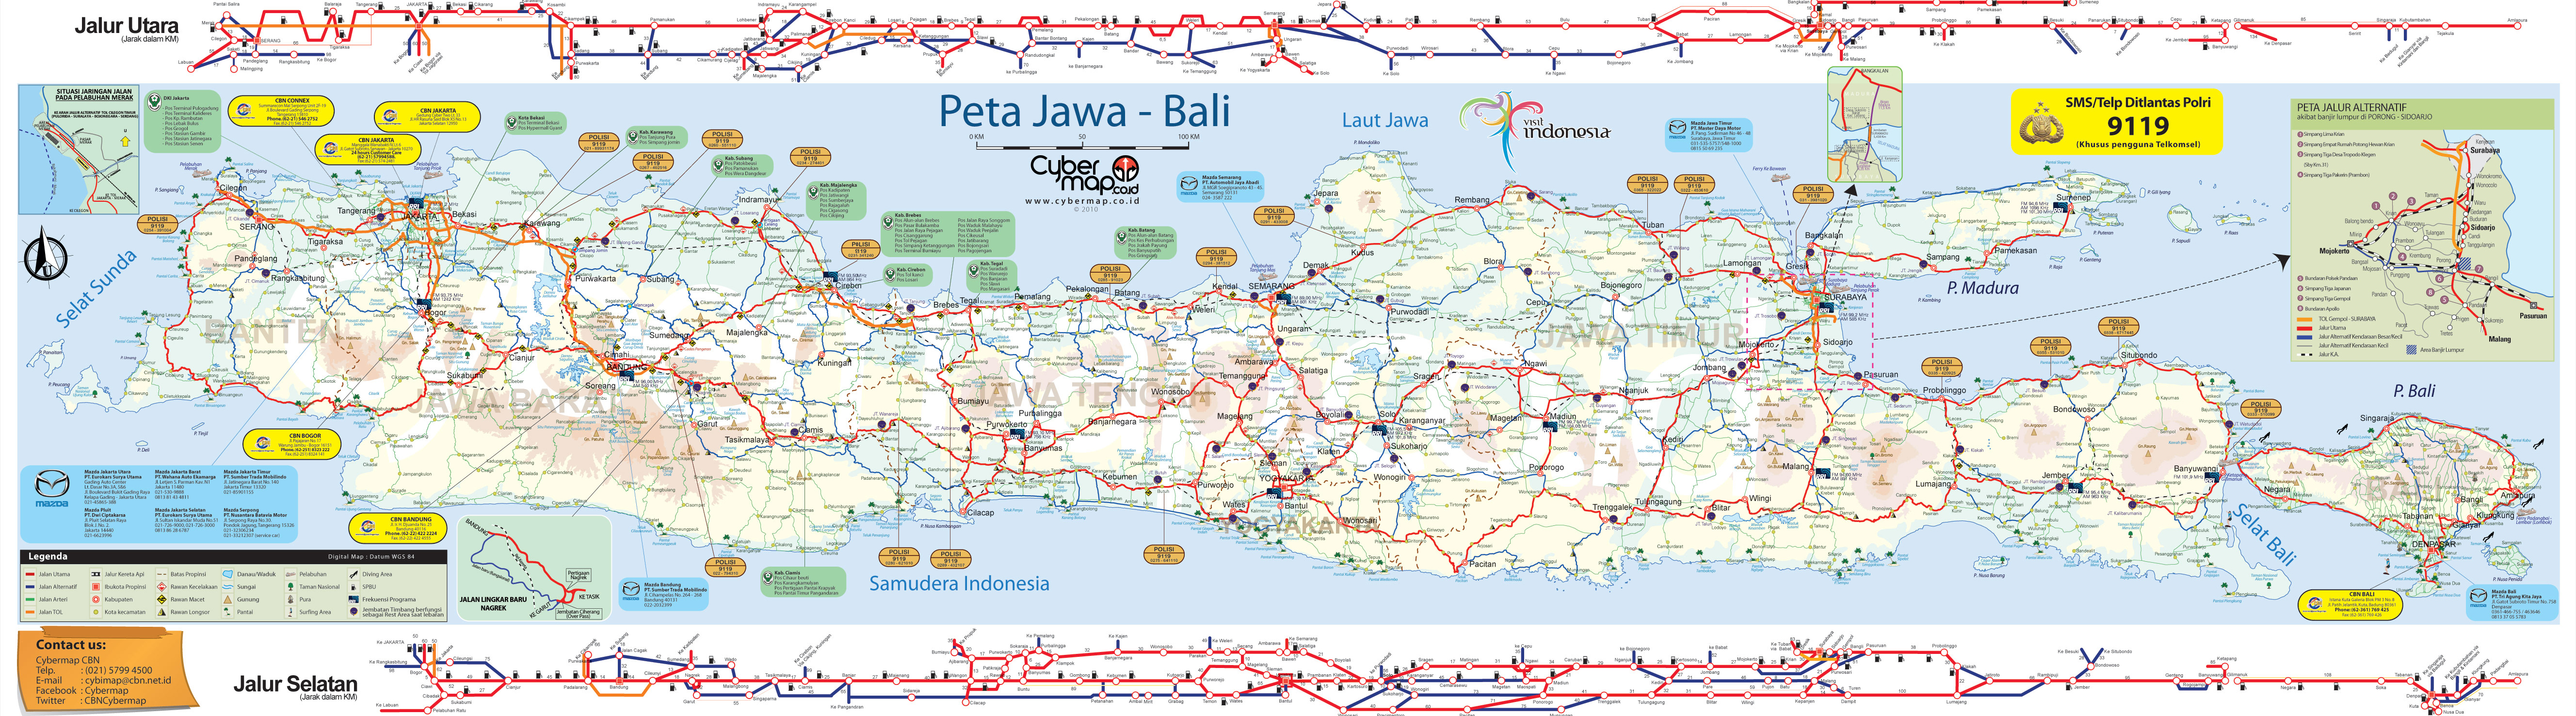 Download Peta  Jalur Mudik 2010 Sumatra Jawa  Bali 